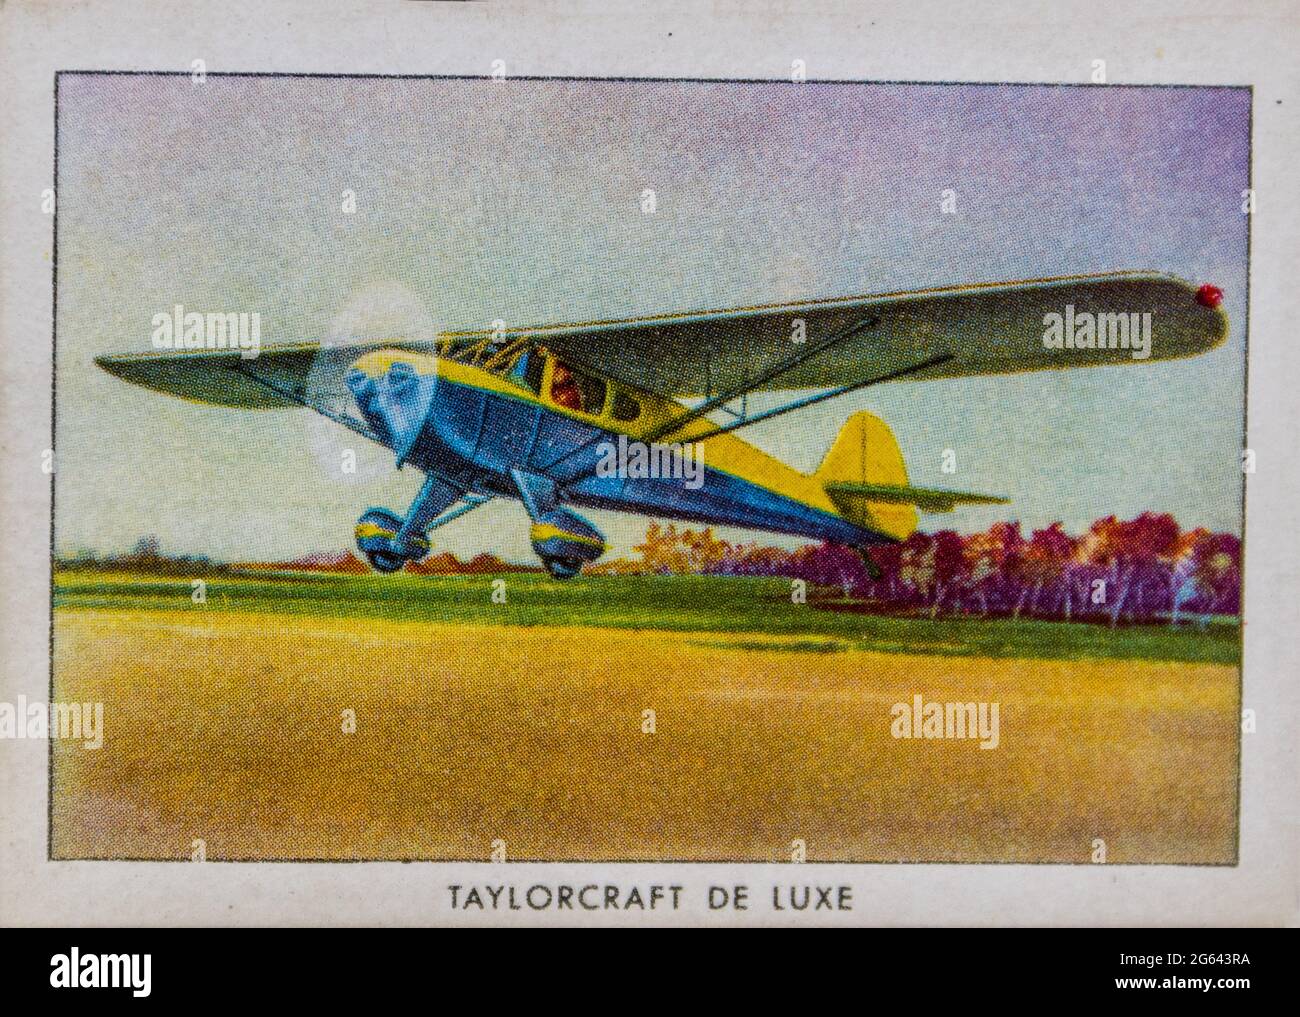 Une carte à cigarettes à motif ailes battues d'un avion de luxe Taylorcraft provenant d'un ensemble appartenant à un vétéran de la marine américaine qui a voyagé dans le monde entier. Banque D'Images